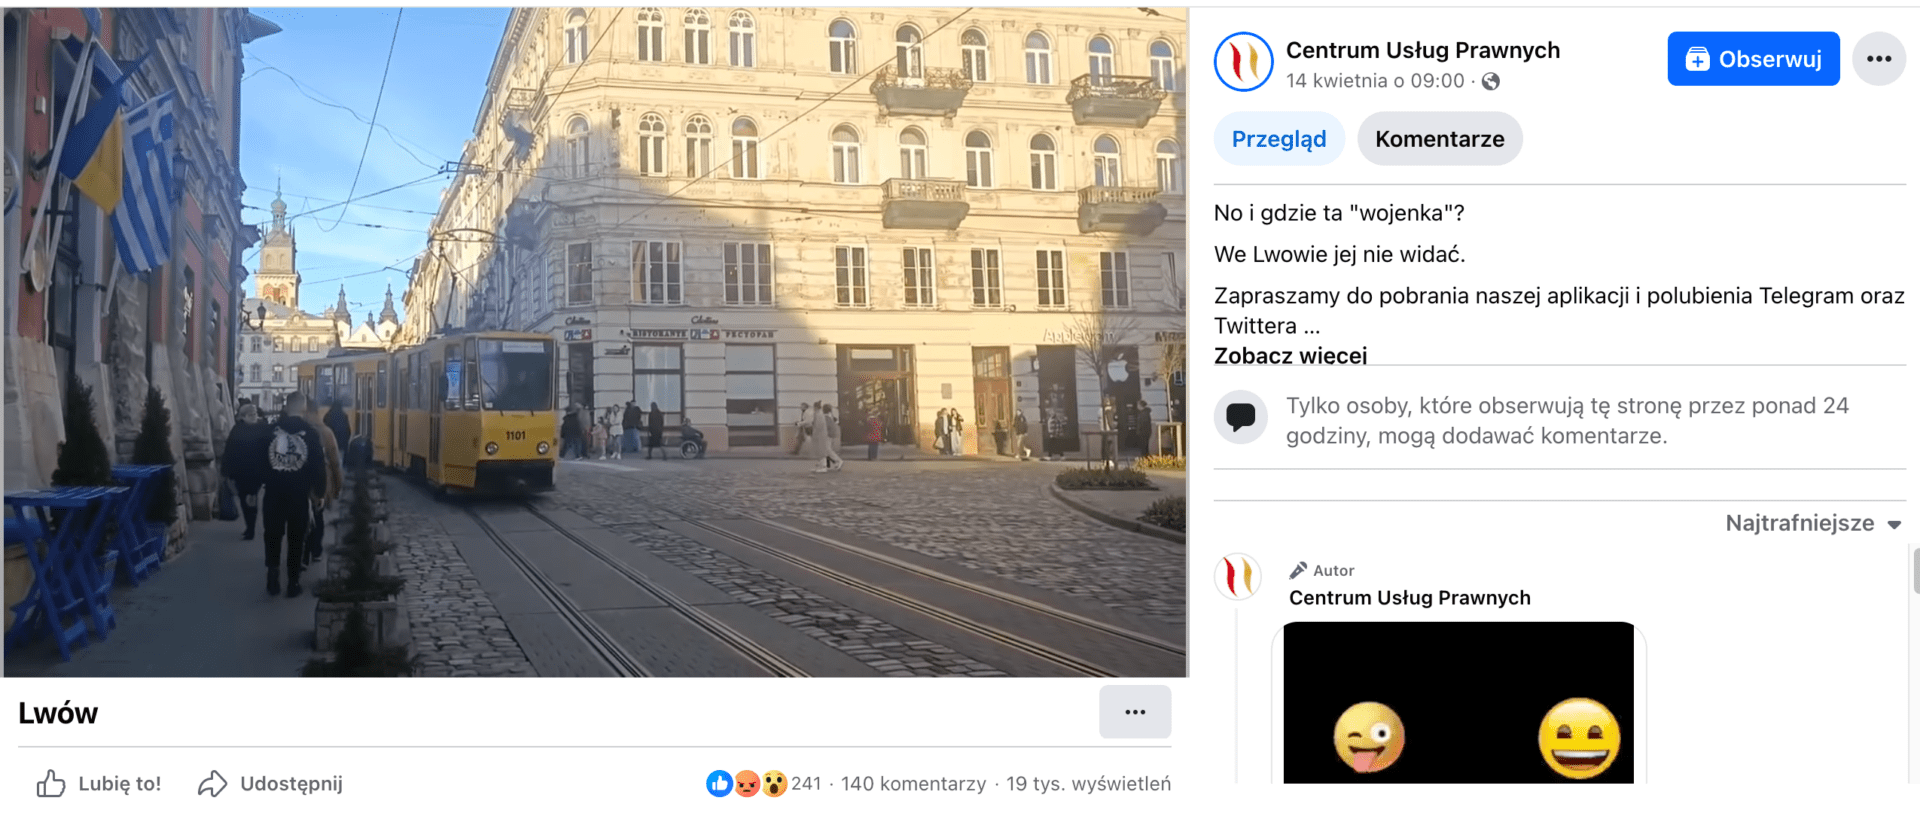 Zrzut ekranu posta na Facebooku. W kadrze pokazano ulice Lwowa: przejeżdżający trwaj, przechodniów, pogodne niebo.